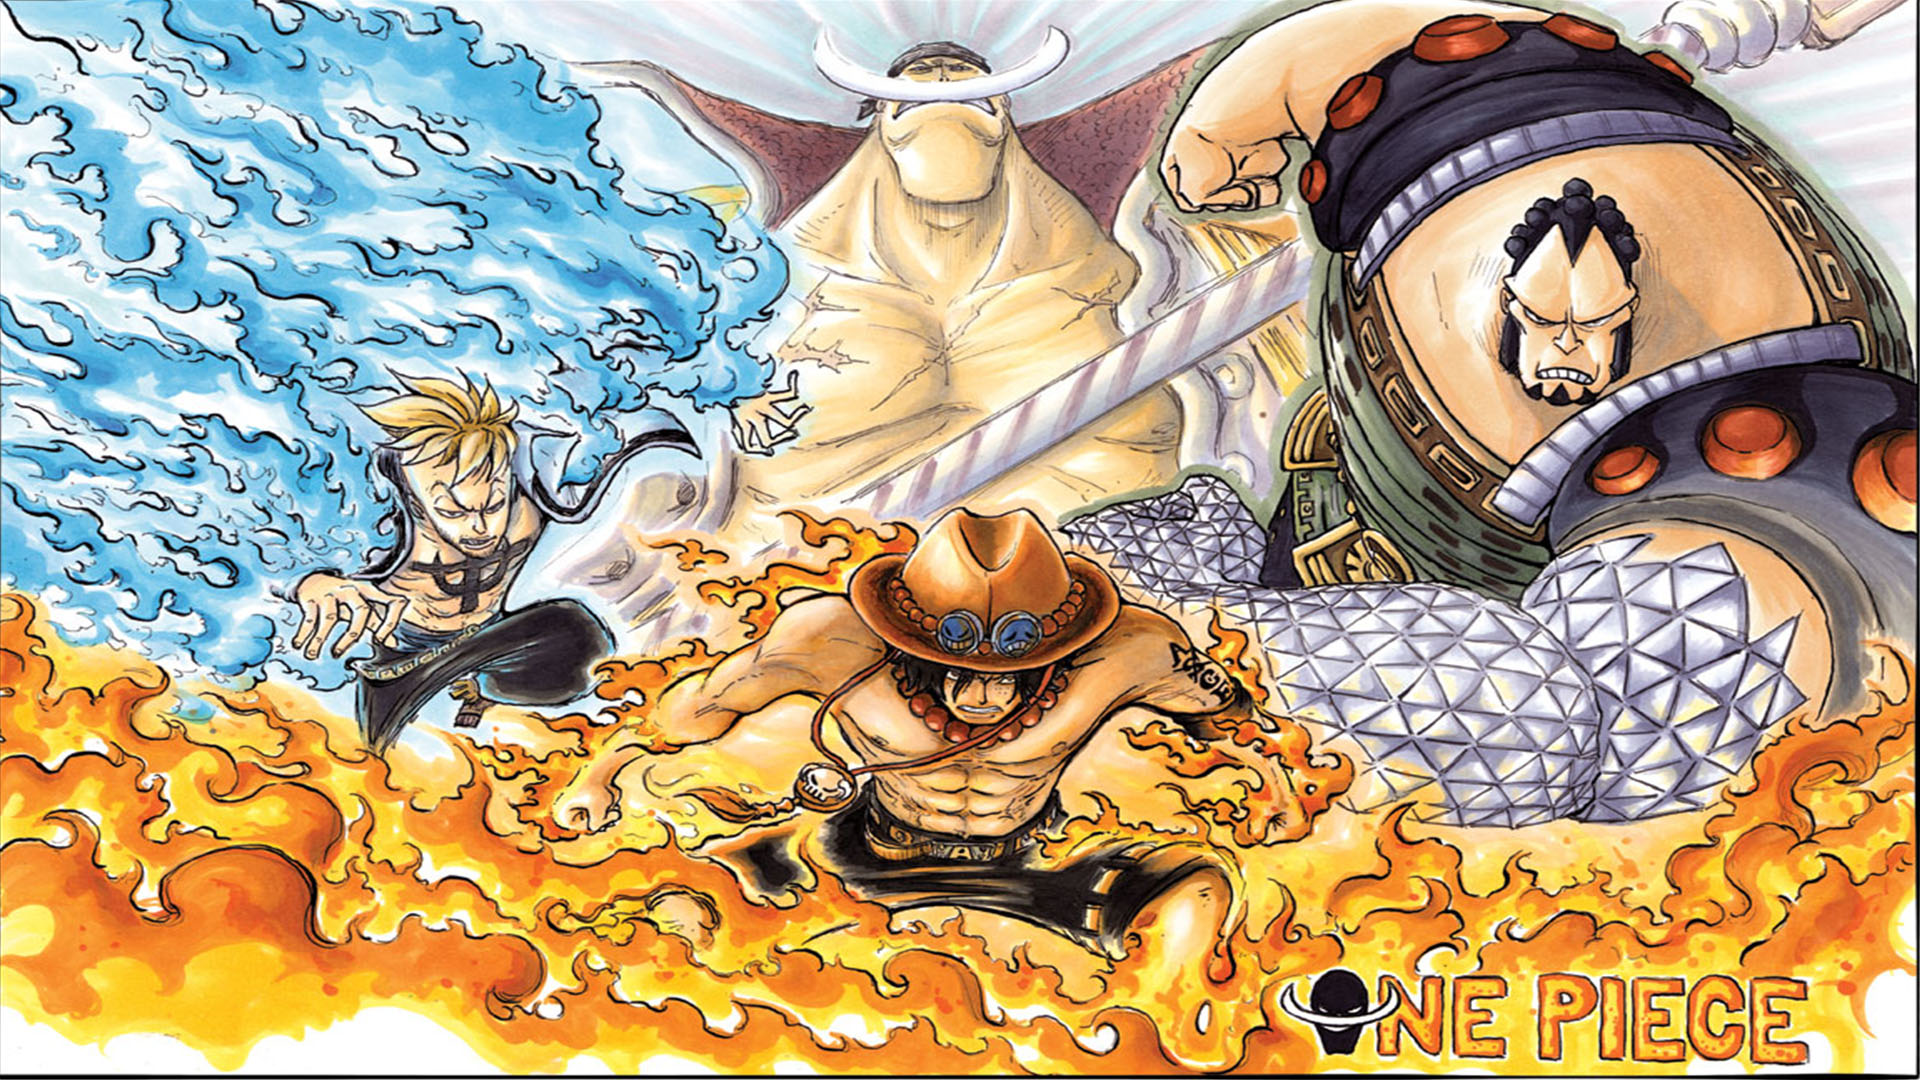 Bạn yêu thích nhân vật Râu Trắng trong One Piece và mong muốn biến chiếc điện thoại của mình thành một món đồ trang trí đẹp mắt? Hãy xem những hình nền One Piece với chiếc râu trắng đặc trưng của nhân vật chính để tìm được bức ảnh ưng ý nhất.